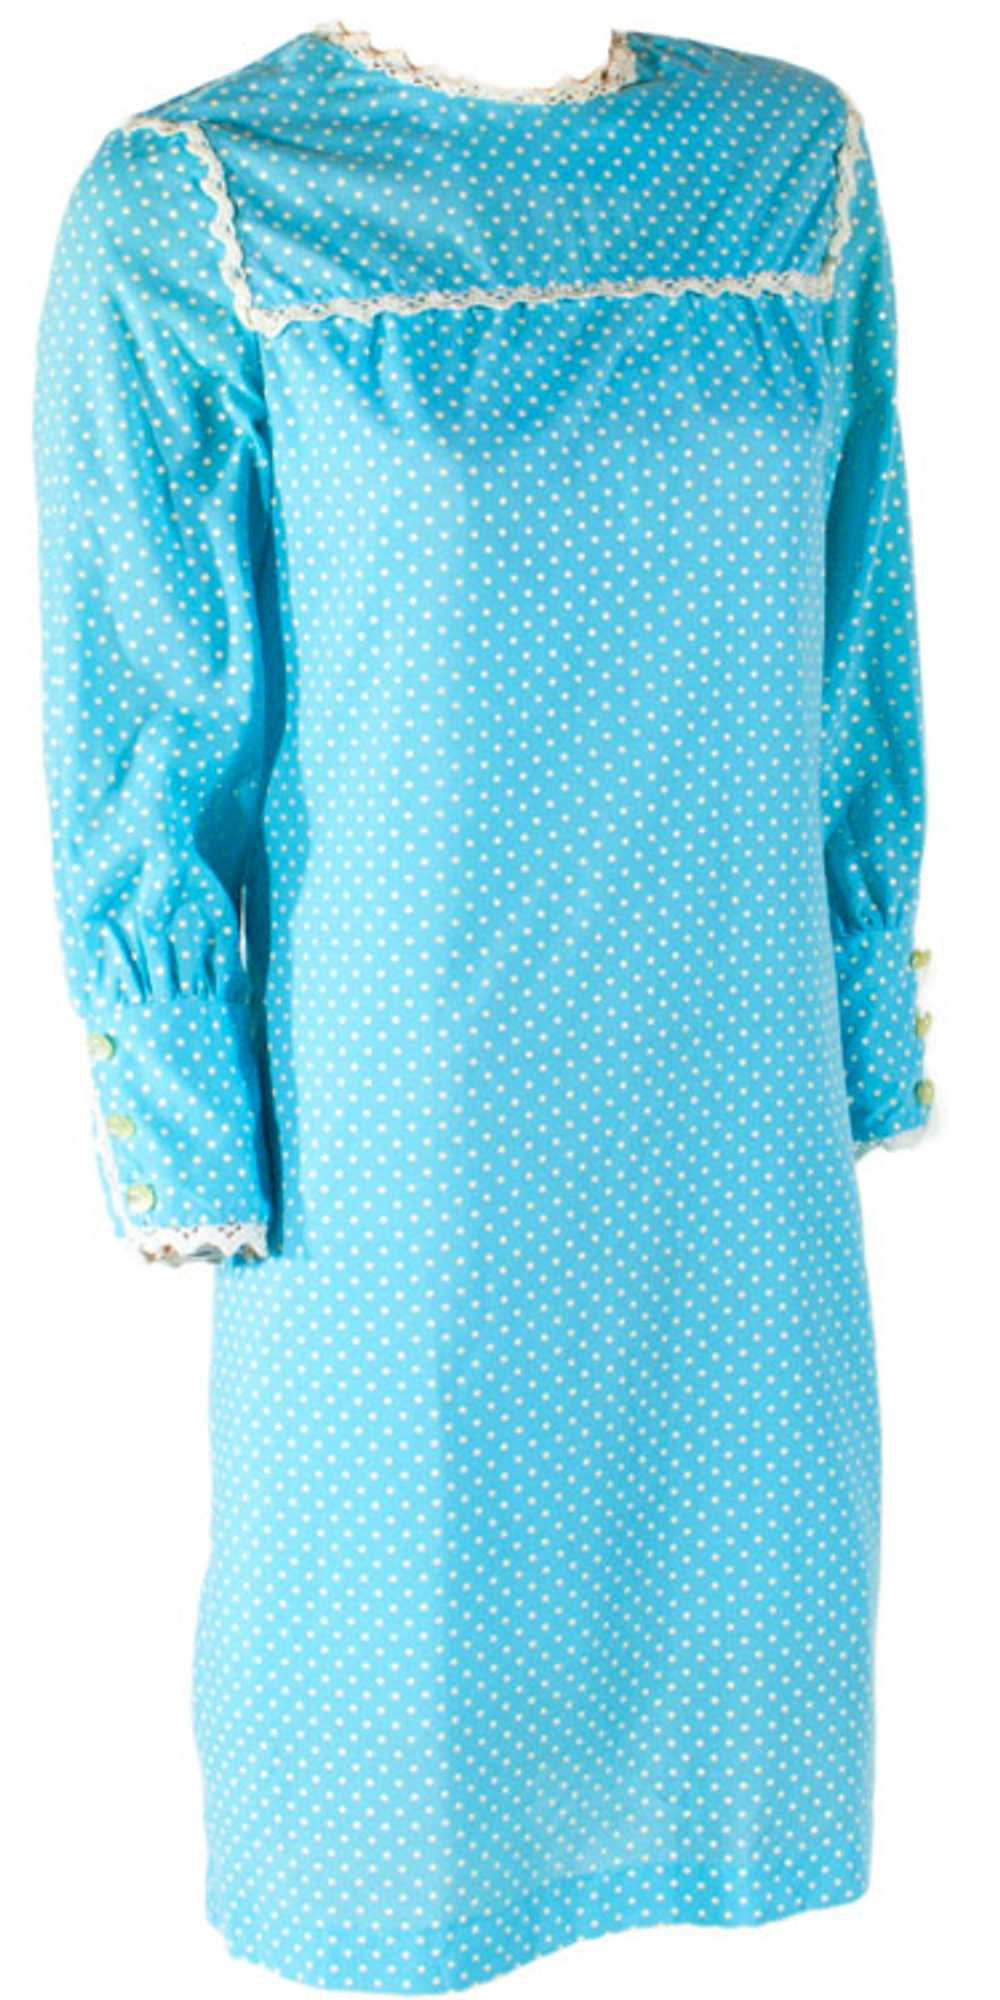 Vintage 1960s Polka Dot Dress - image 1